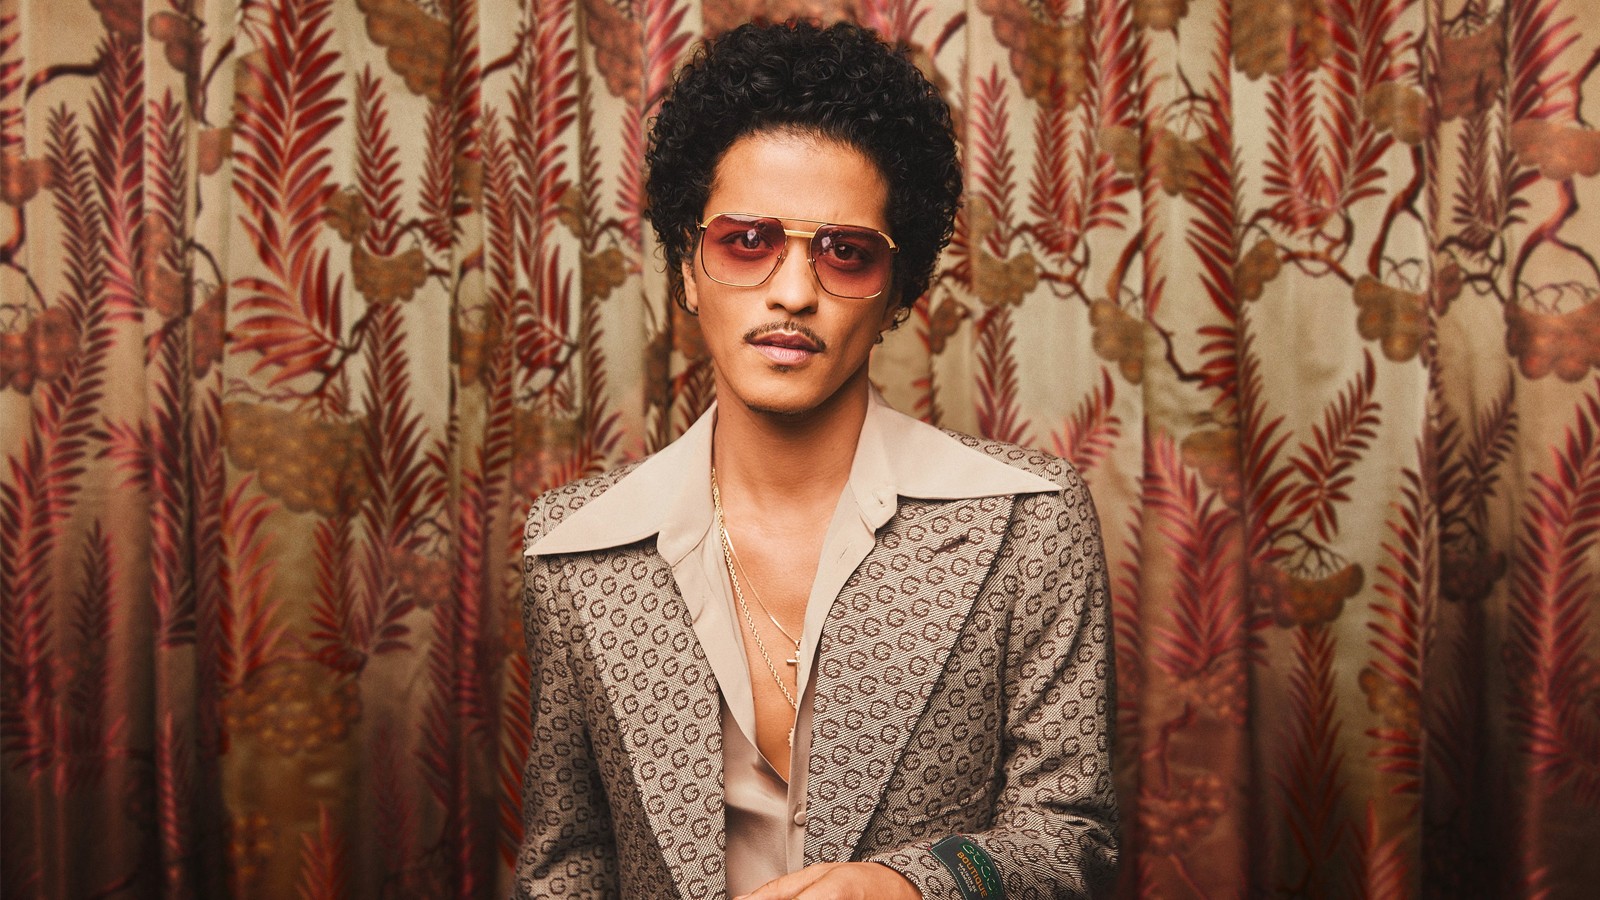 Nhìn lại sự nghiệp của ca sĩ biểu tượng - Bruno Mars